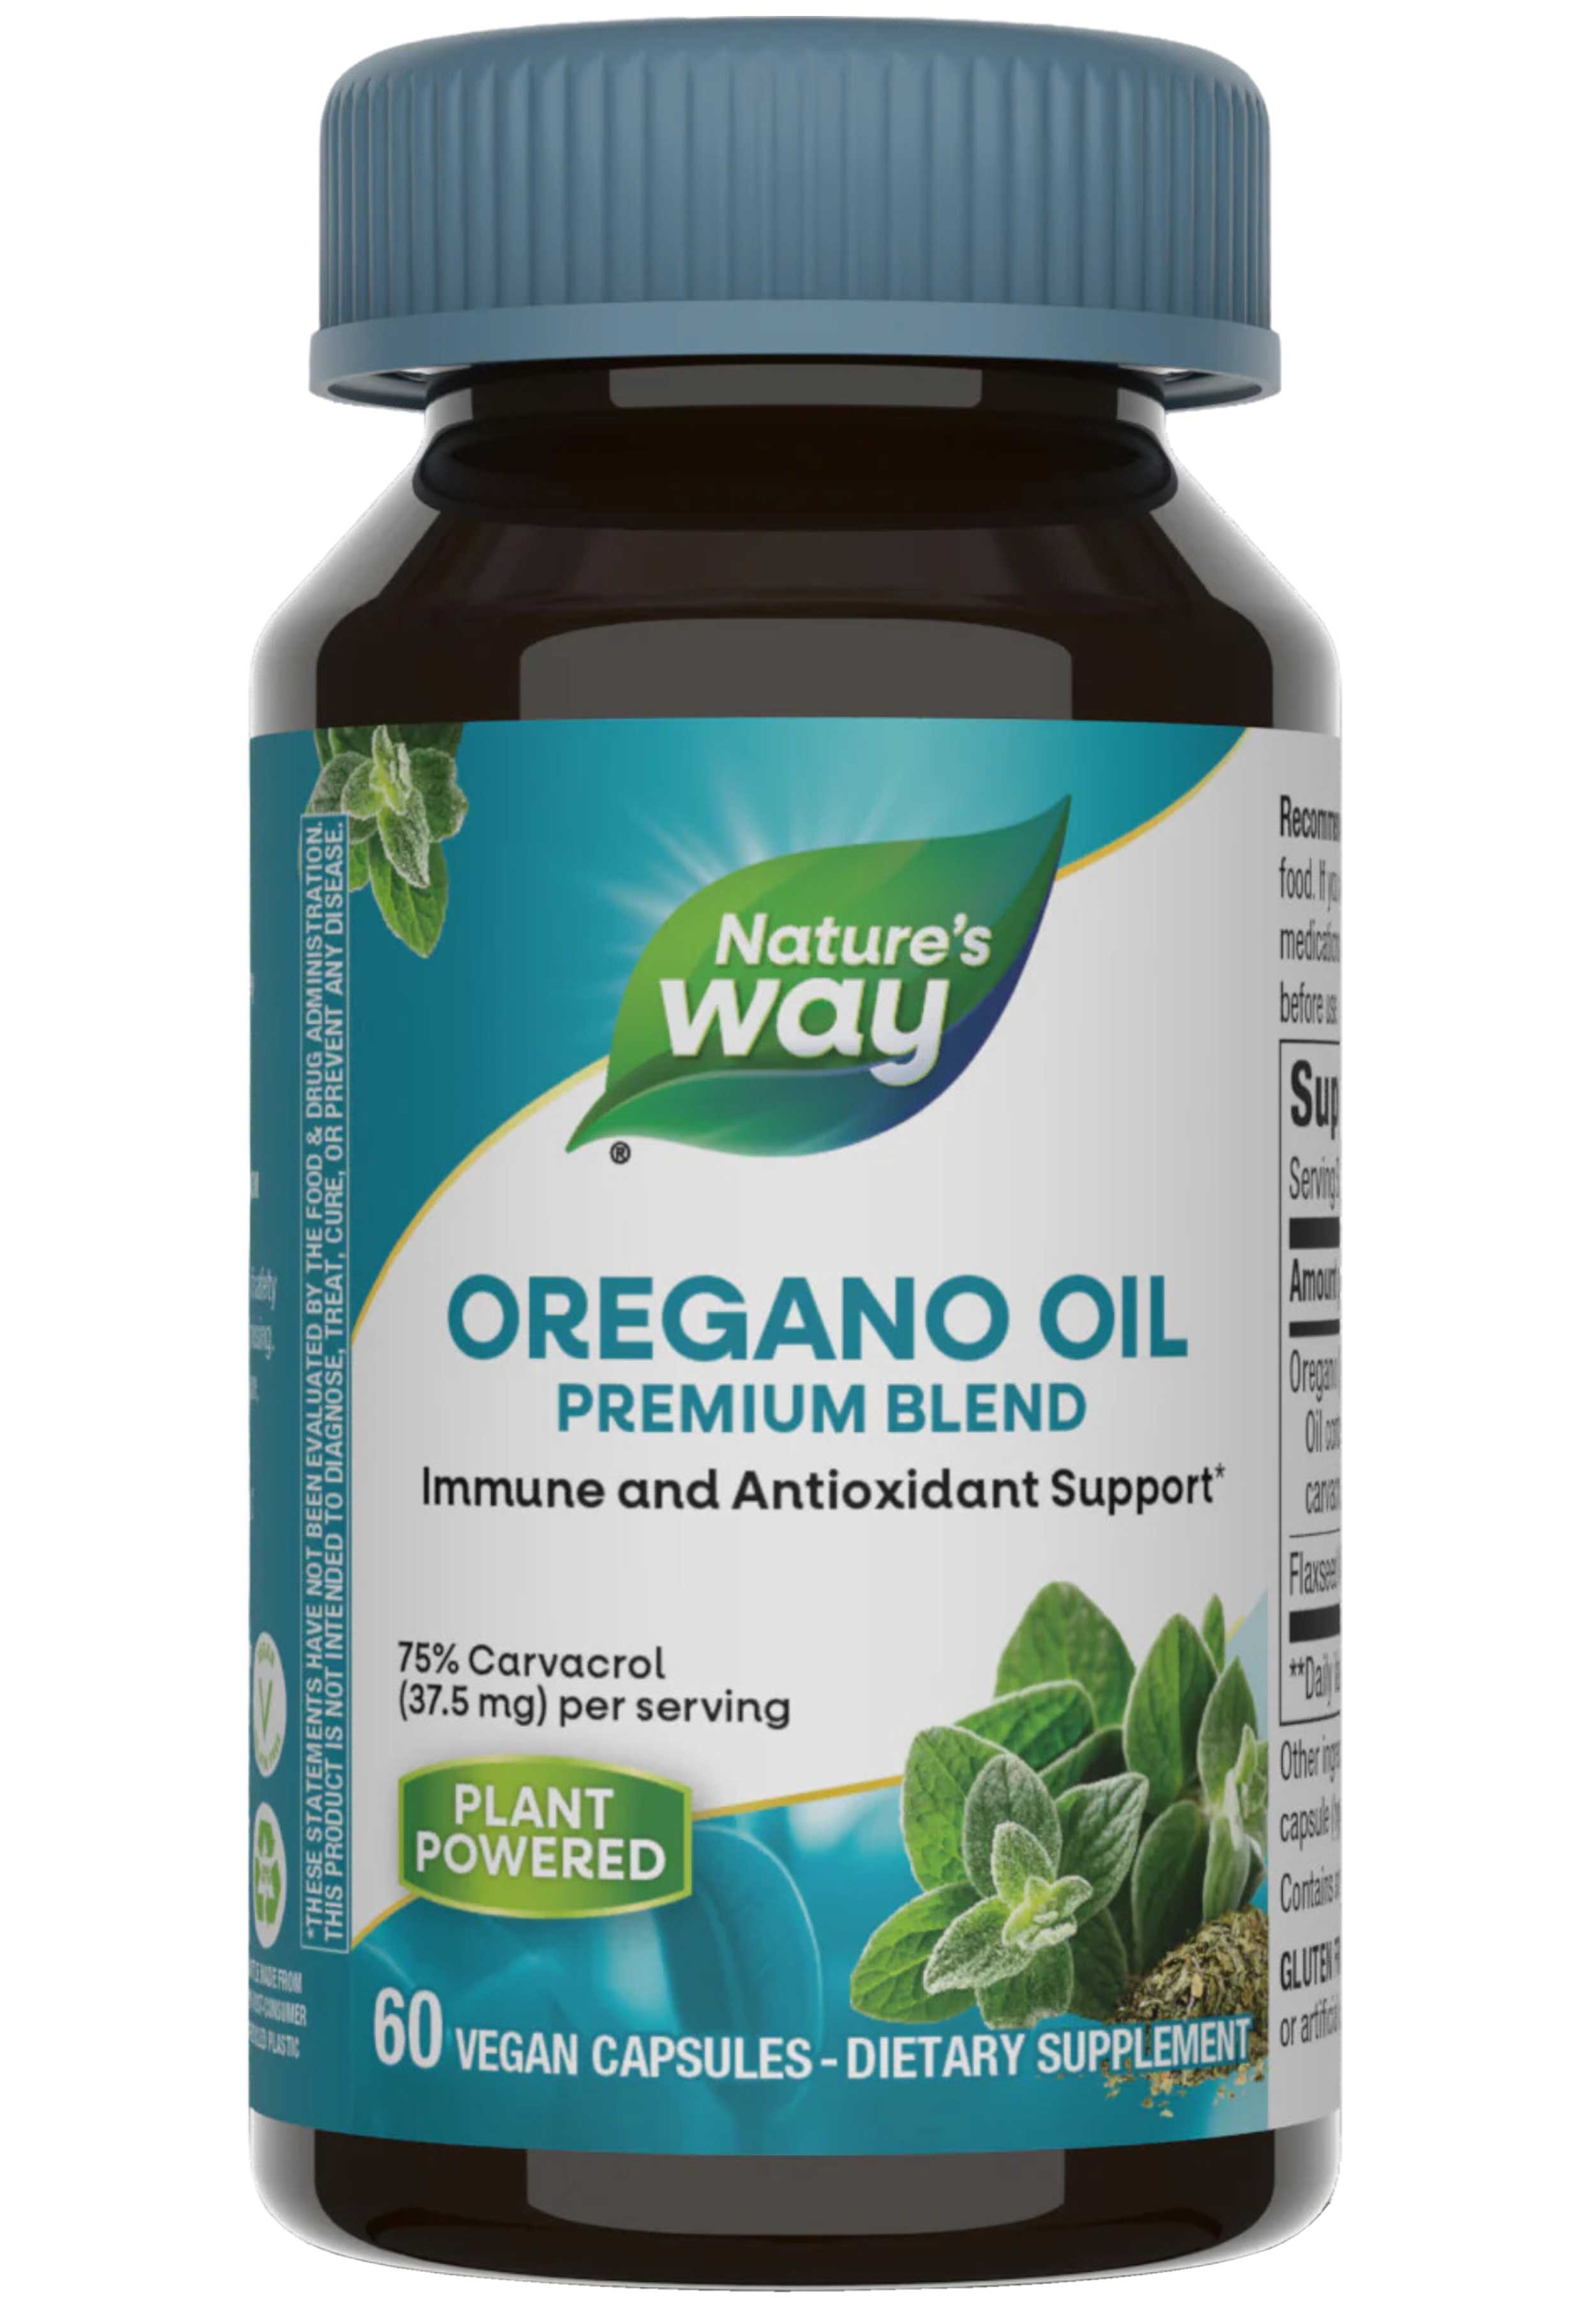 Nature's Way Oregano Oil